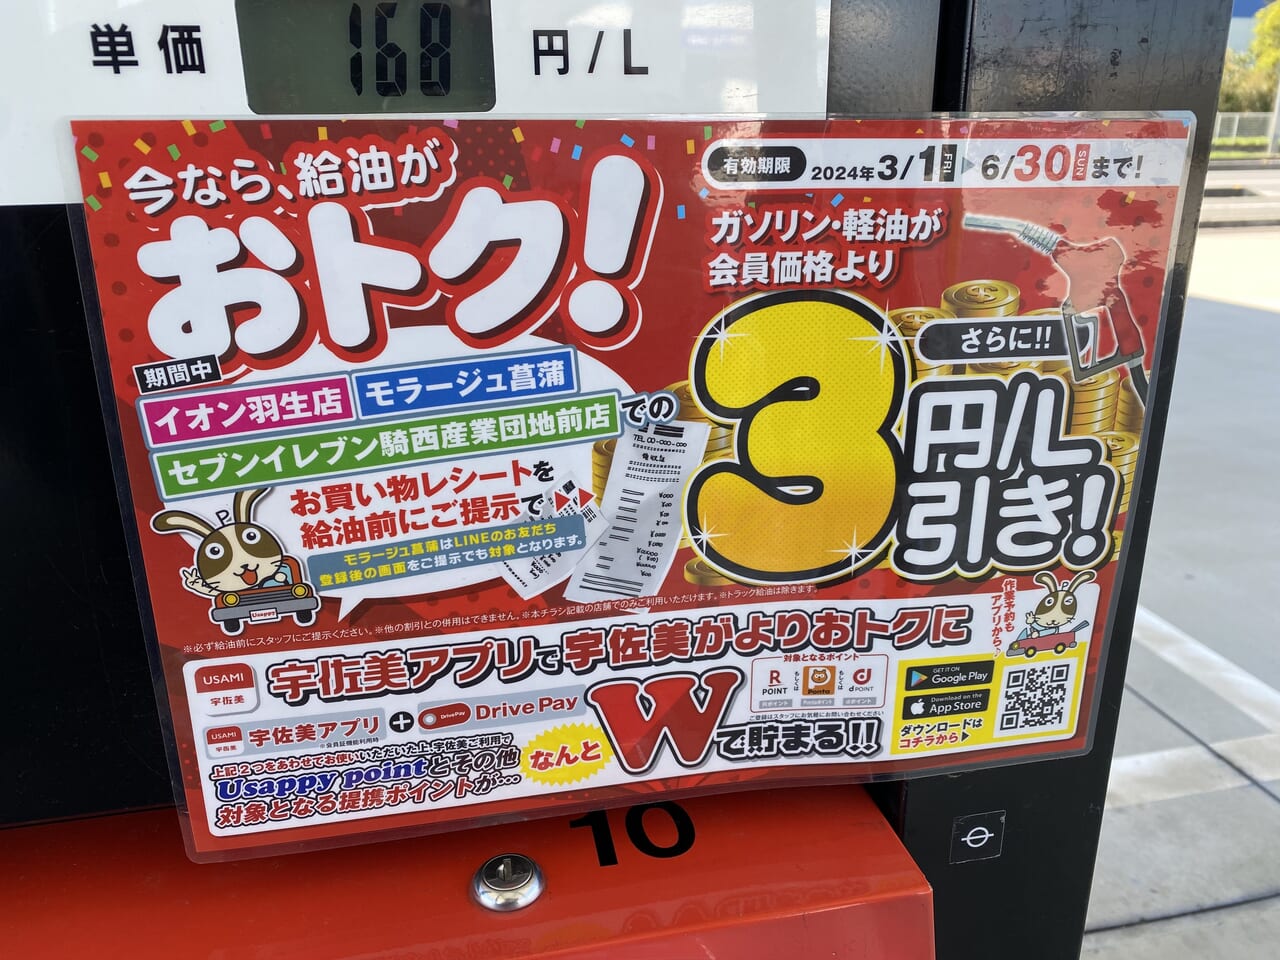 宇佐美サービスステーション「122号加須騎西」の給油3円/L引きキャンペーン